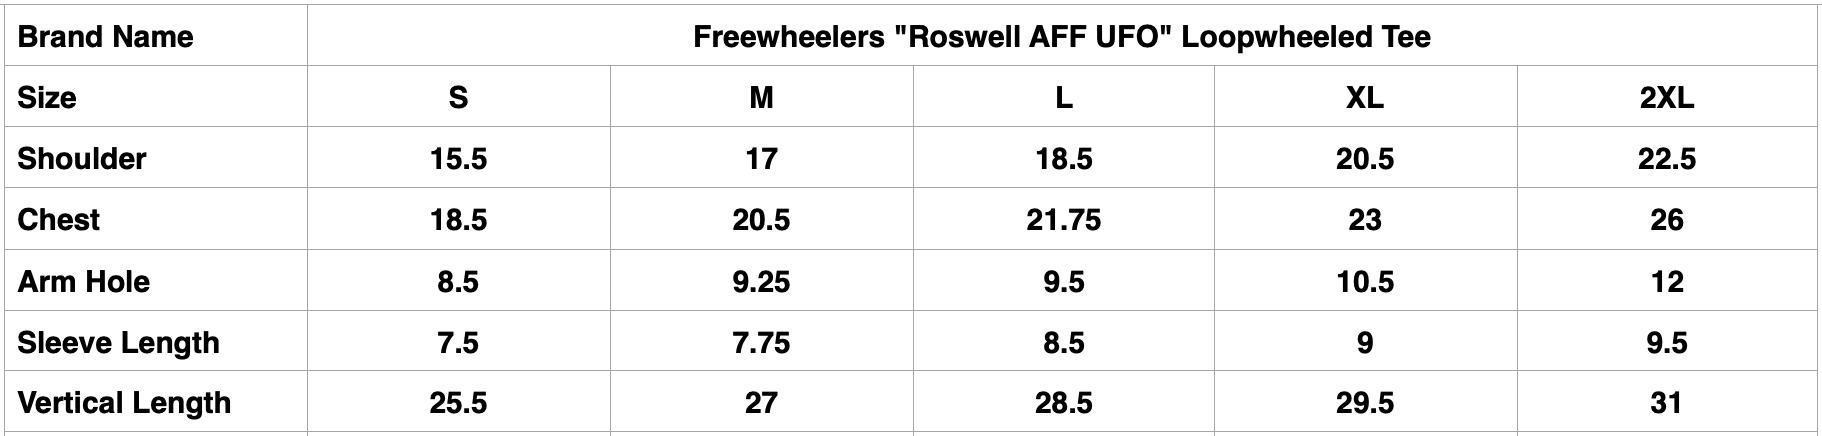 Freewheelers "Roswell AFF UFO" Loopwheeled Tee (Off-White)